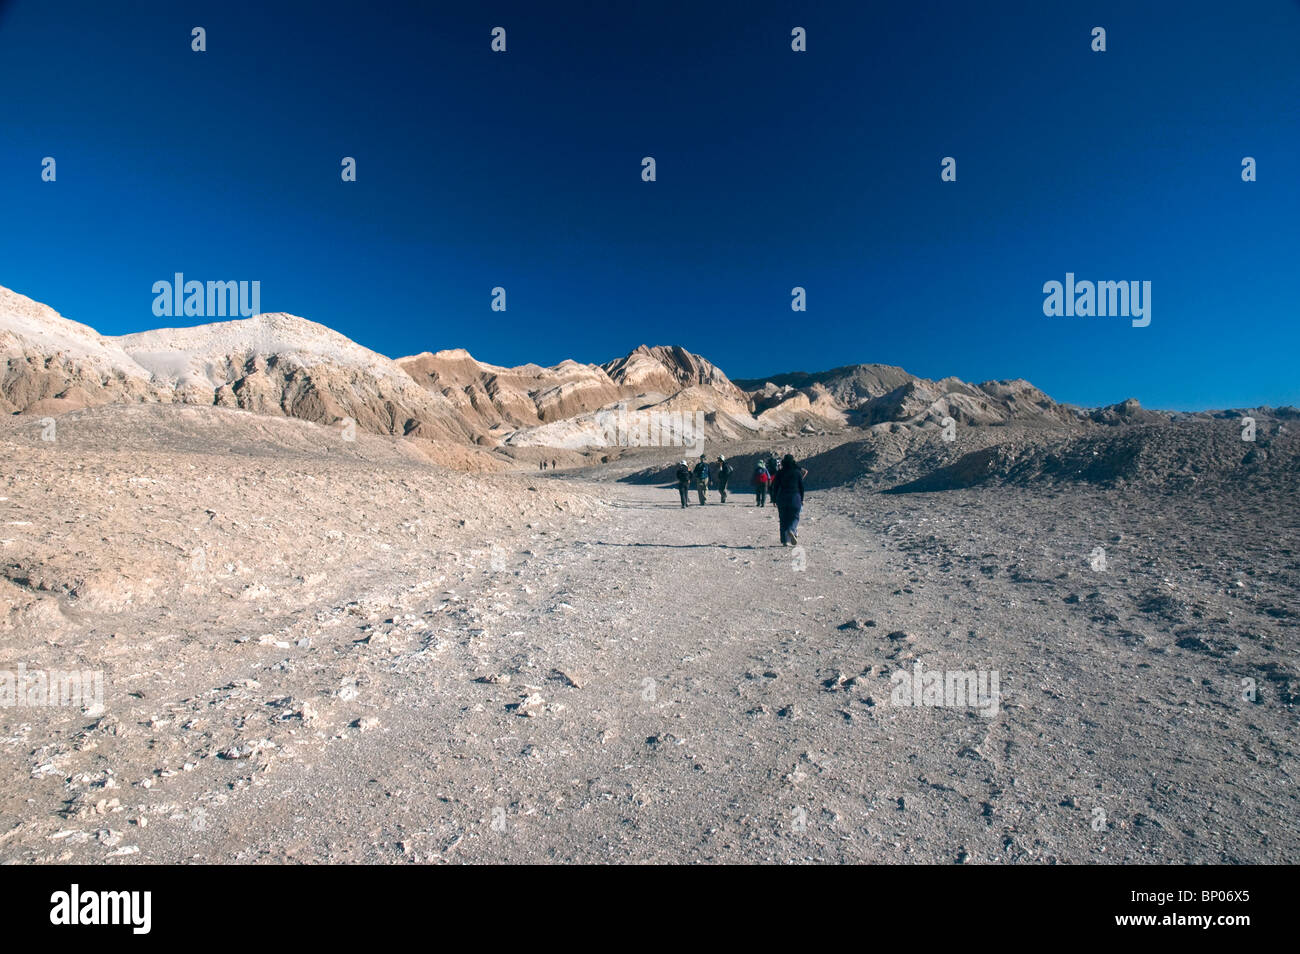 Eroded rock formations in the Valle de la Luna, Moon Valley, San Pedro de Atacama, Chile, South America. Stock Photo